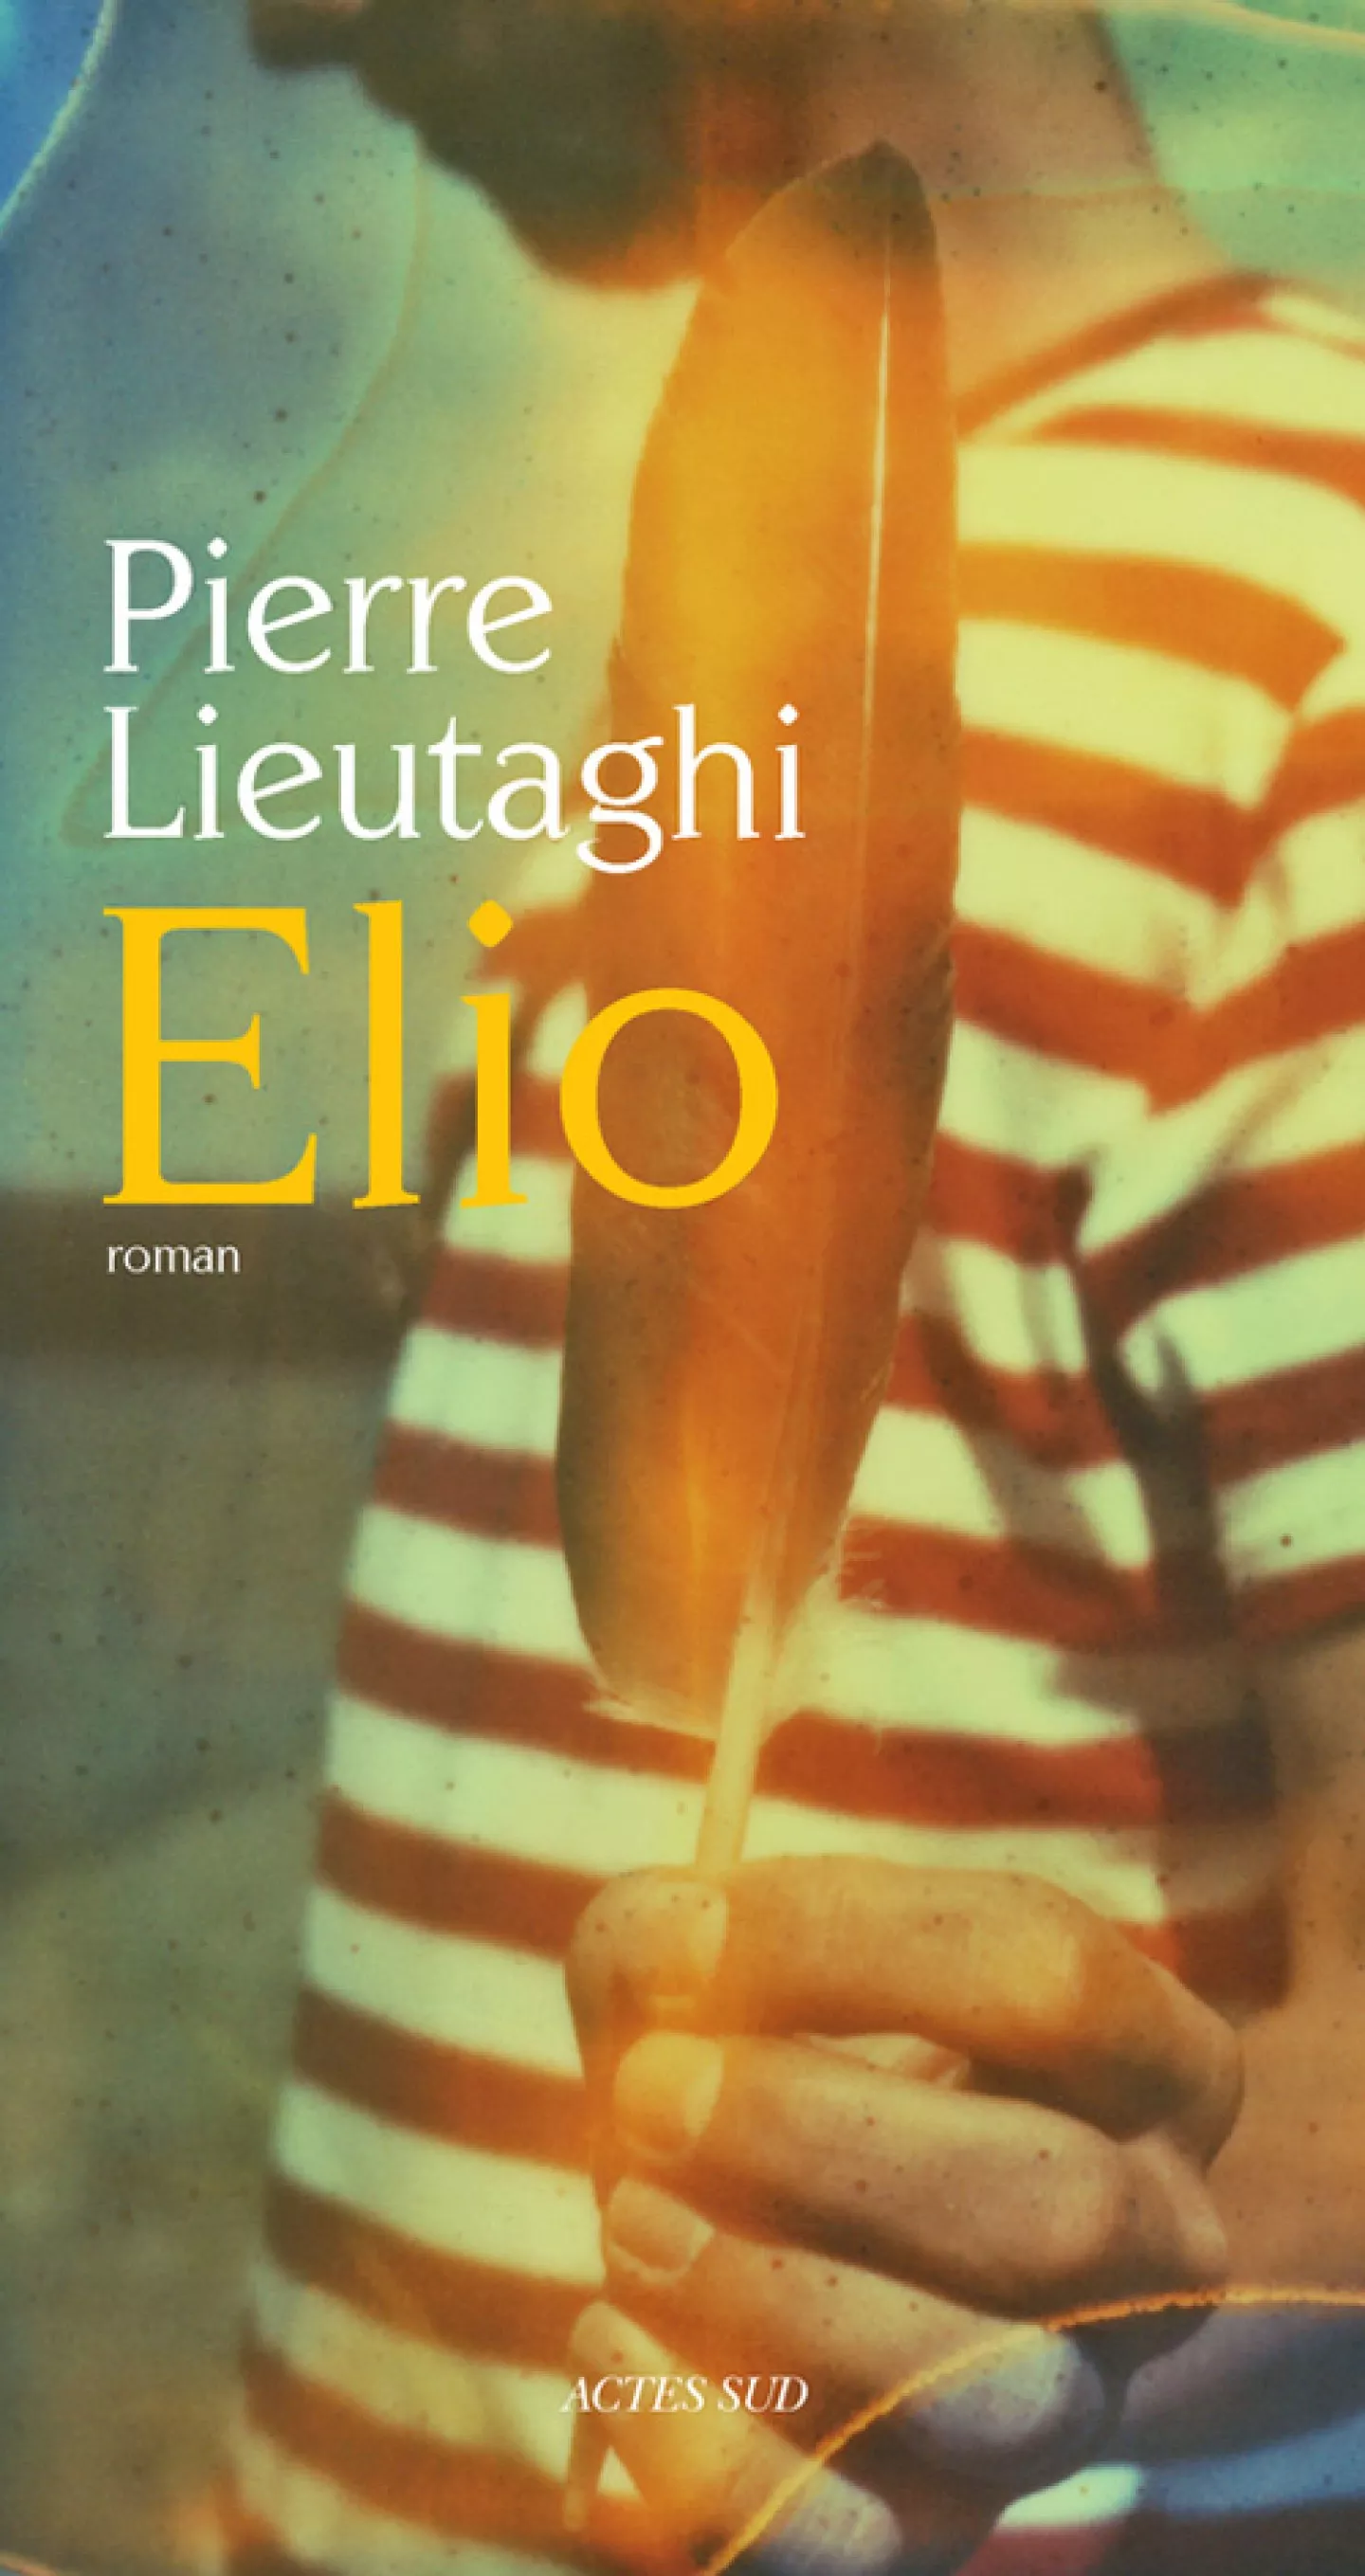 Elio, roman de Pierre Lieutaghi